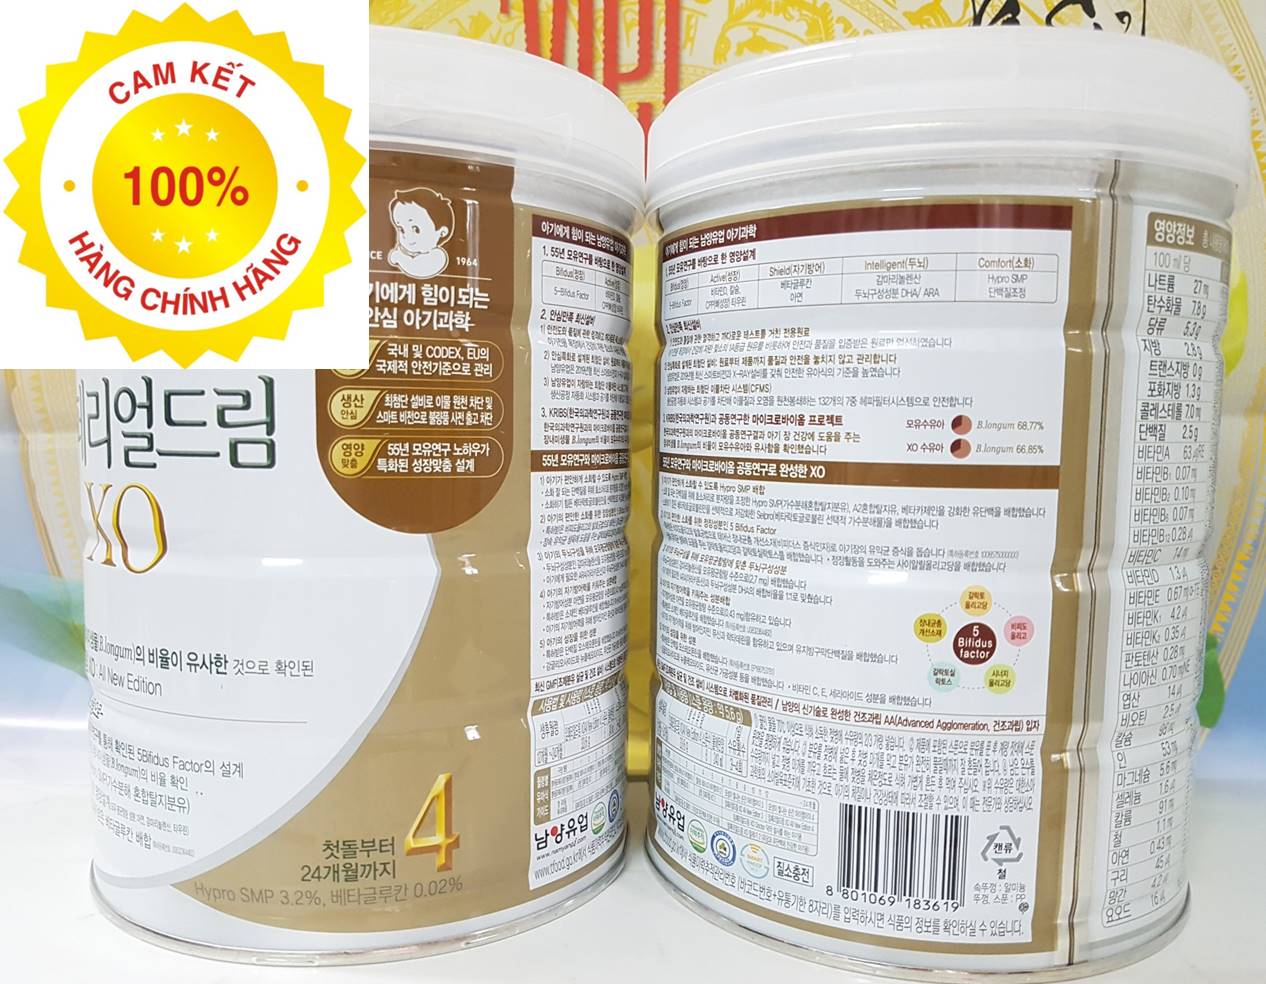 Combo 2 hộp sữa XO Hàn Quốc số 4 800g chính hãng cho bé 1-2 tuổi